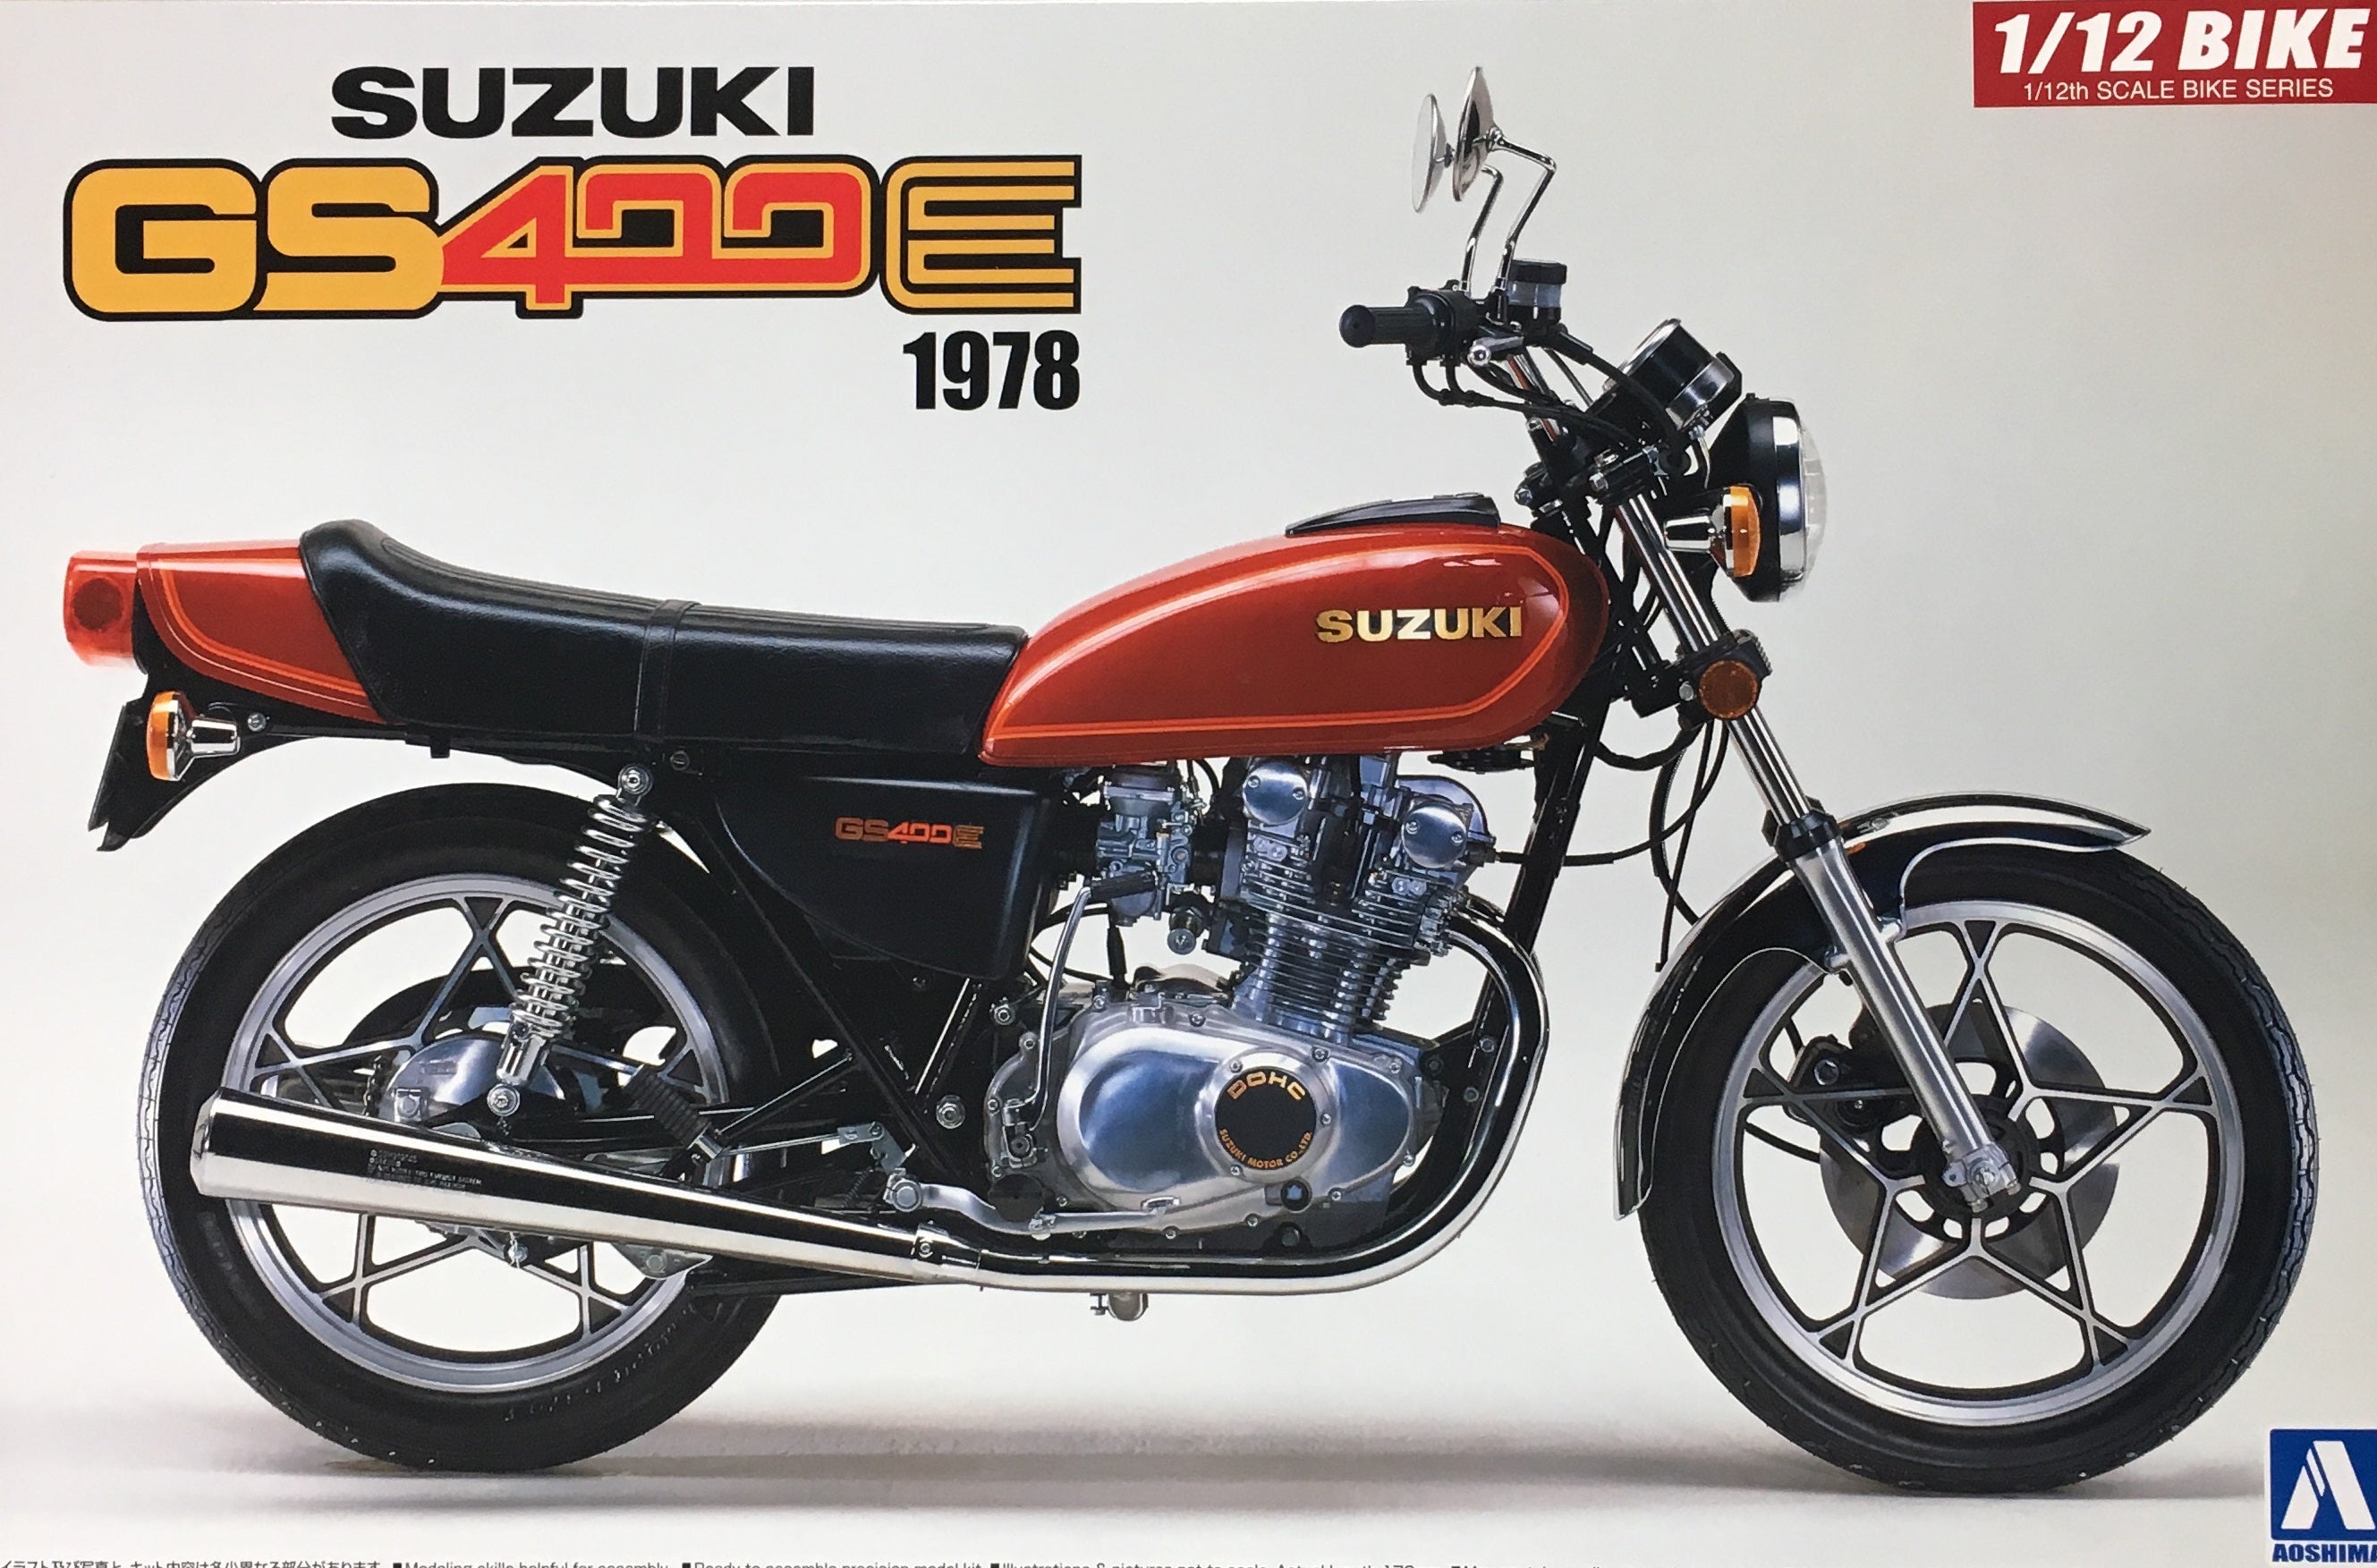 Suzuki GS400E